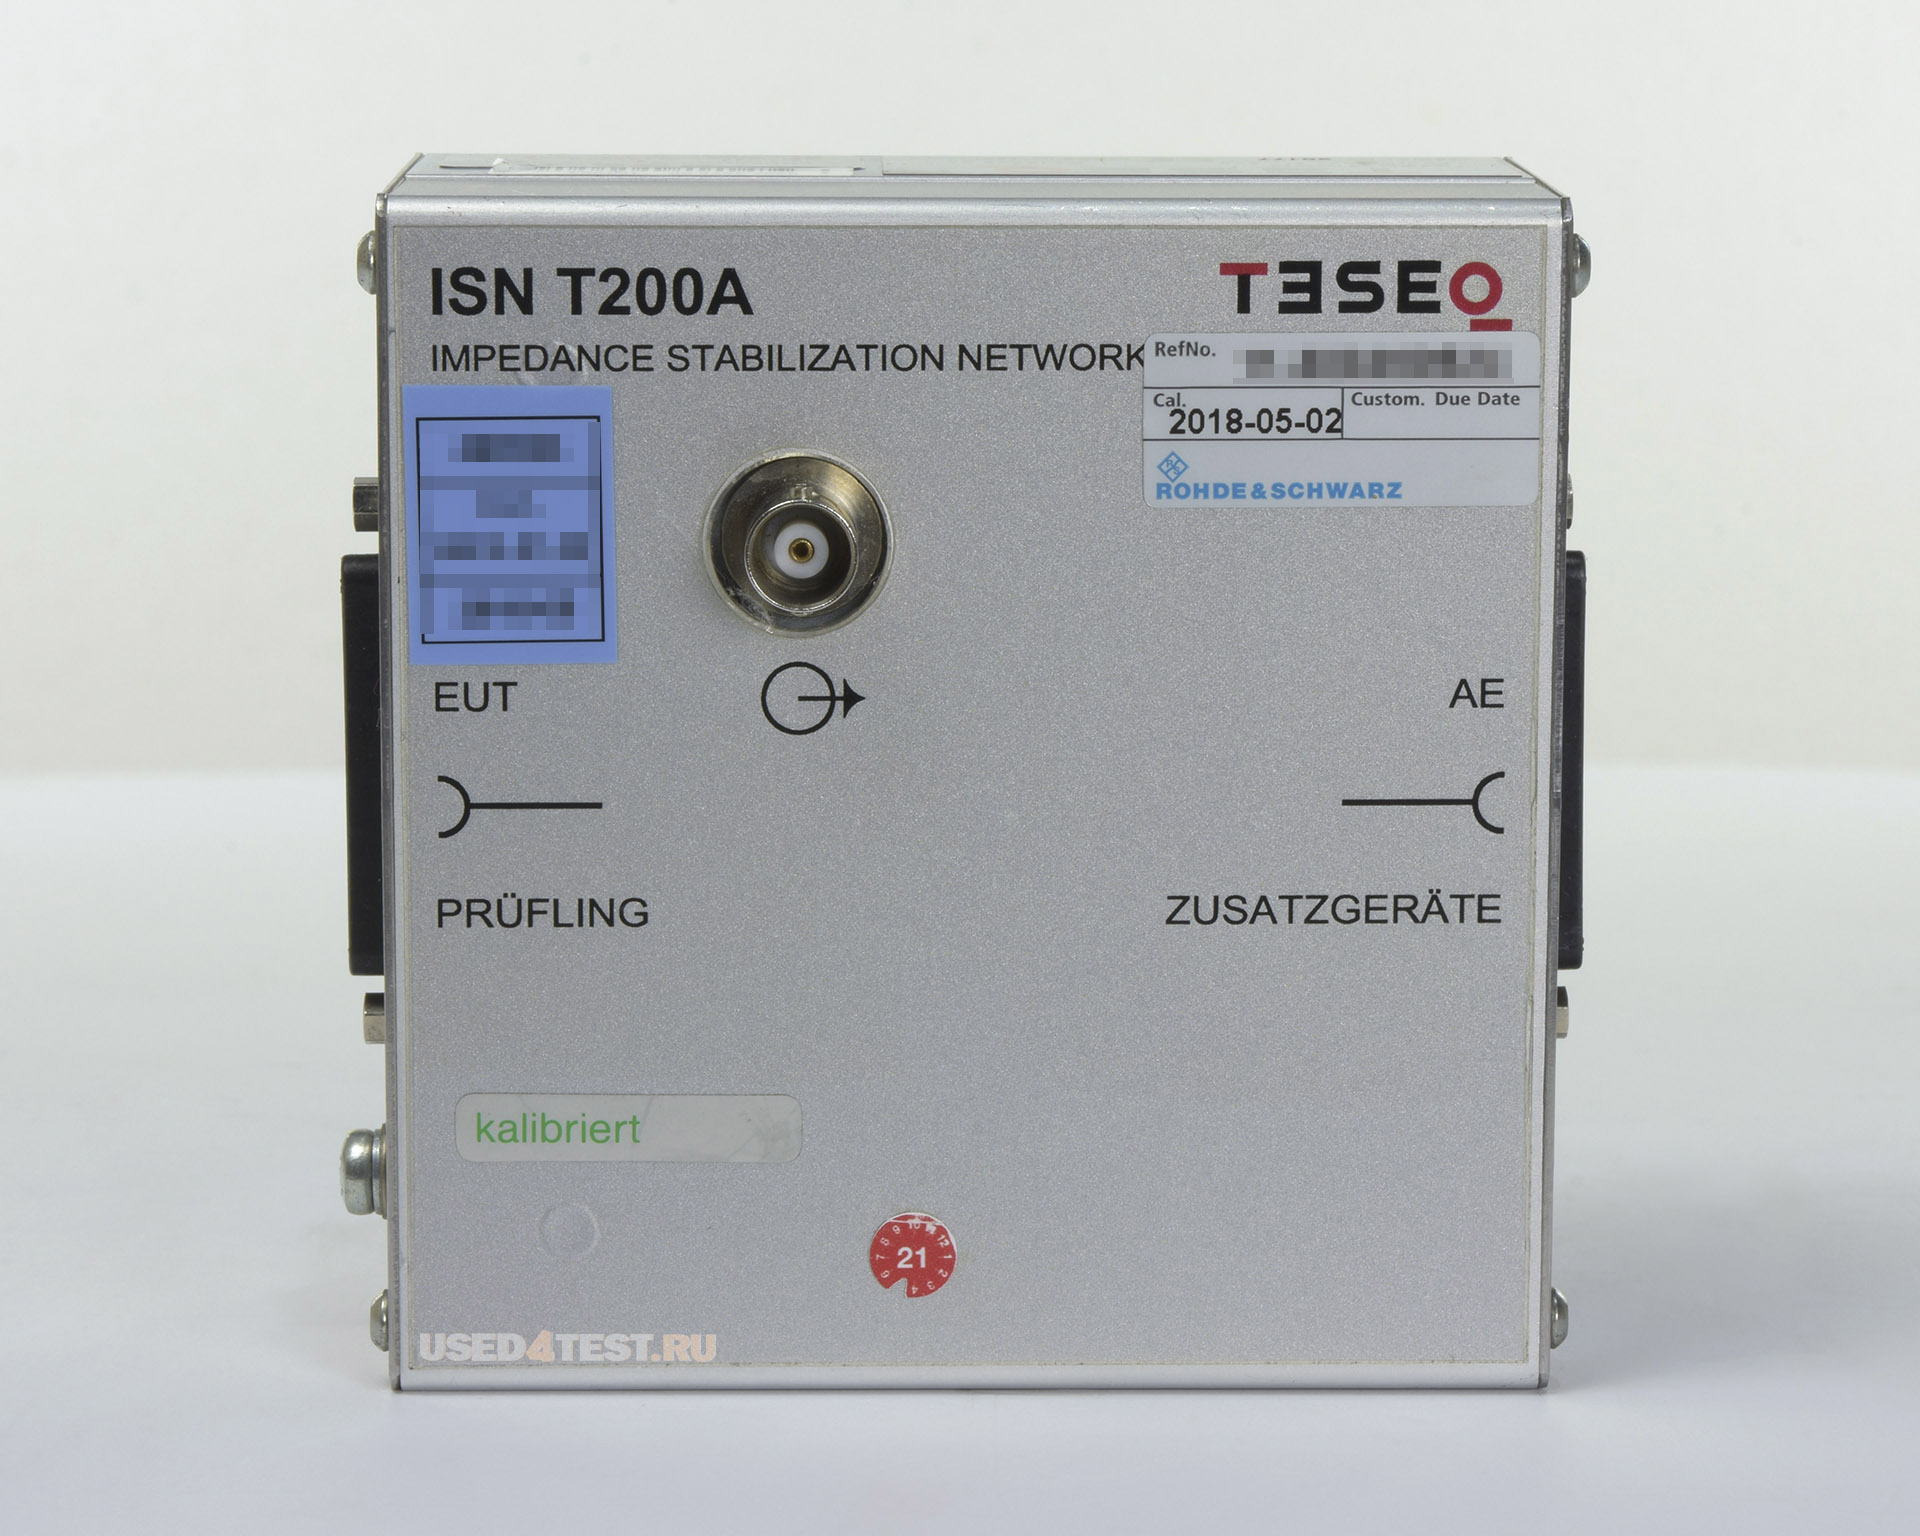 Эквивалент полного сопротивления сети для подключения 1-й 2-проводной симметричной линииTESEQ ISN T200Aс диапазоном от 150 кГц до 80 МГц